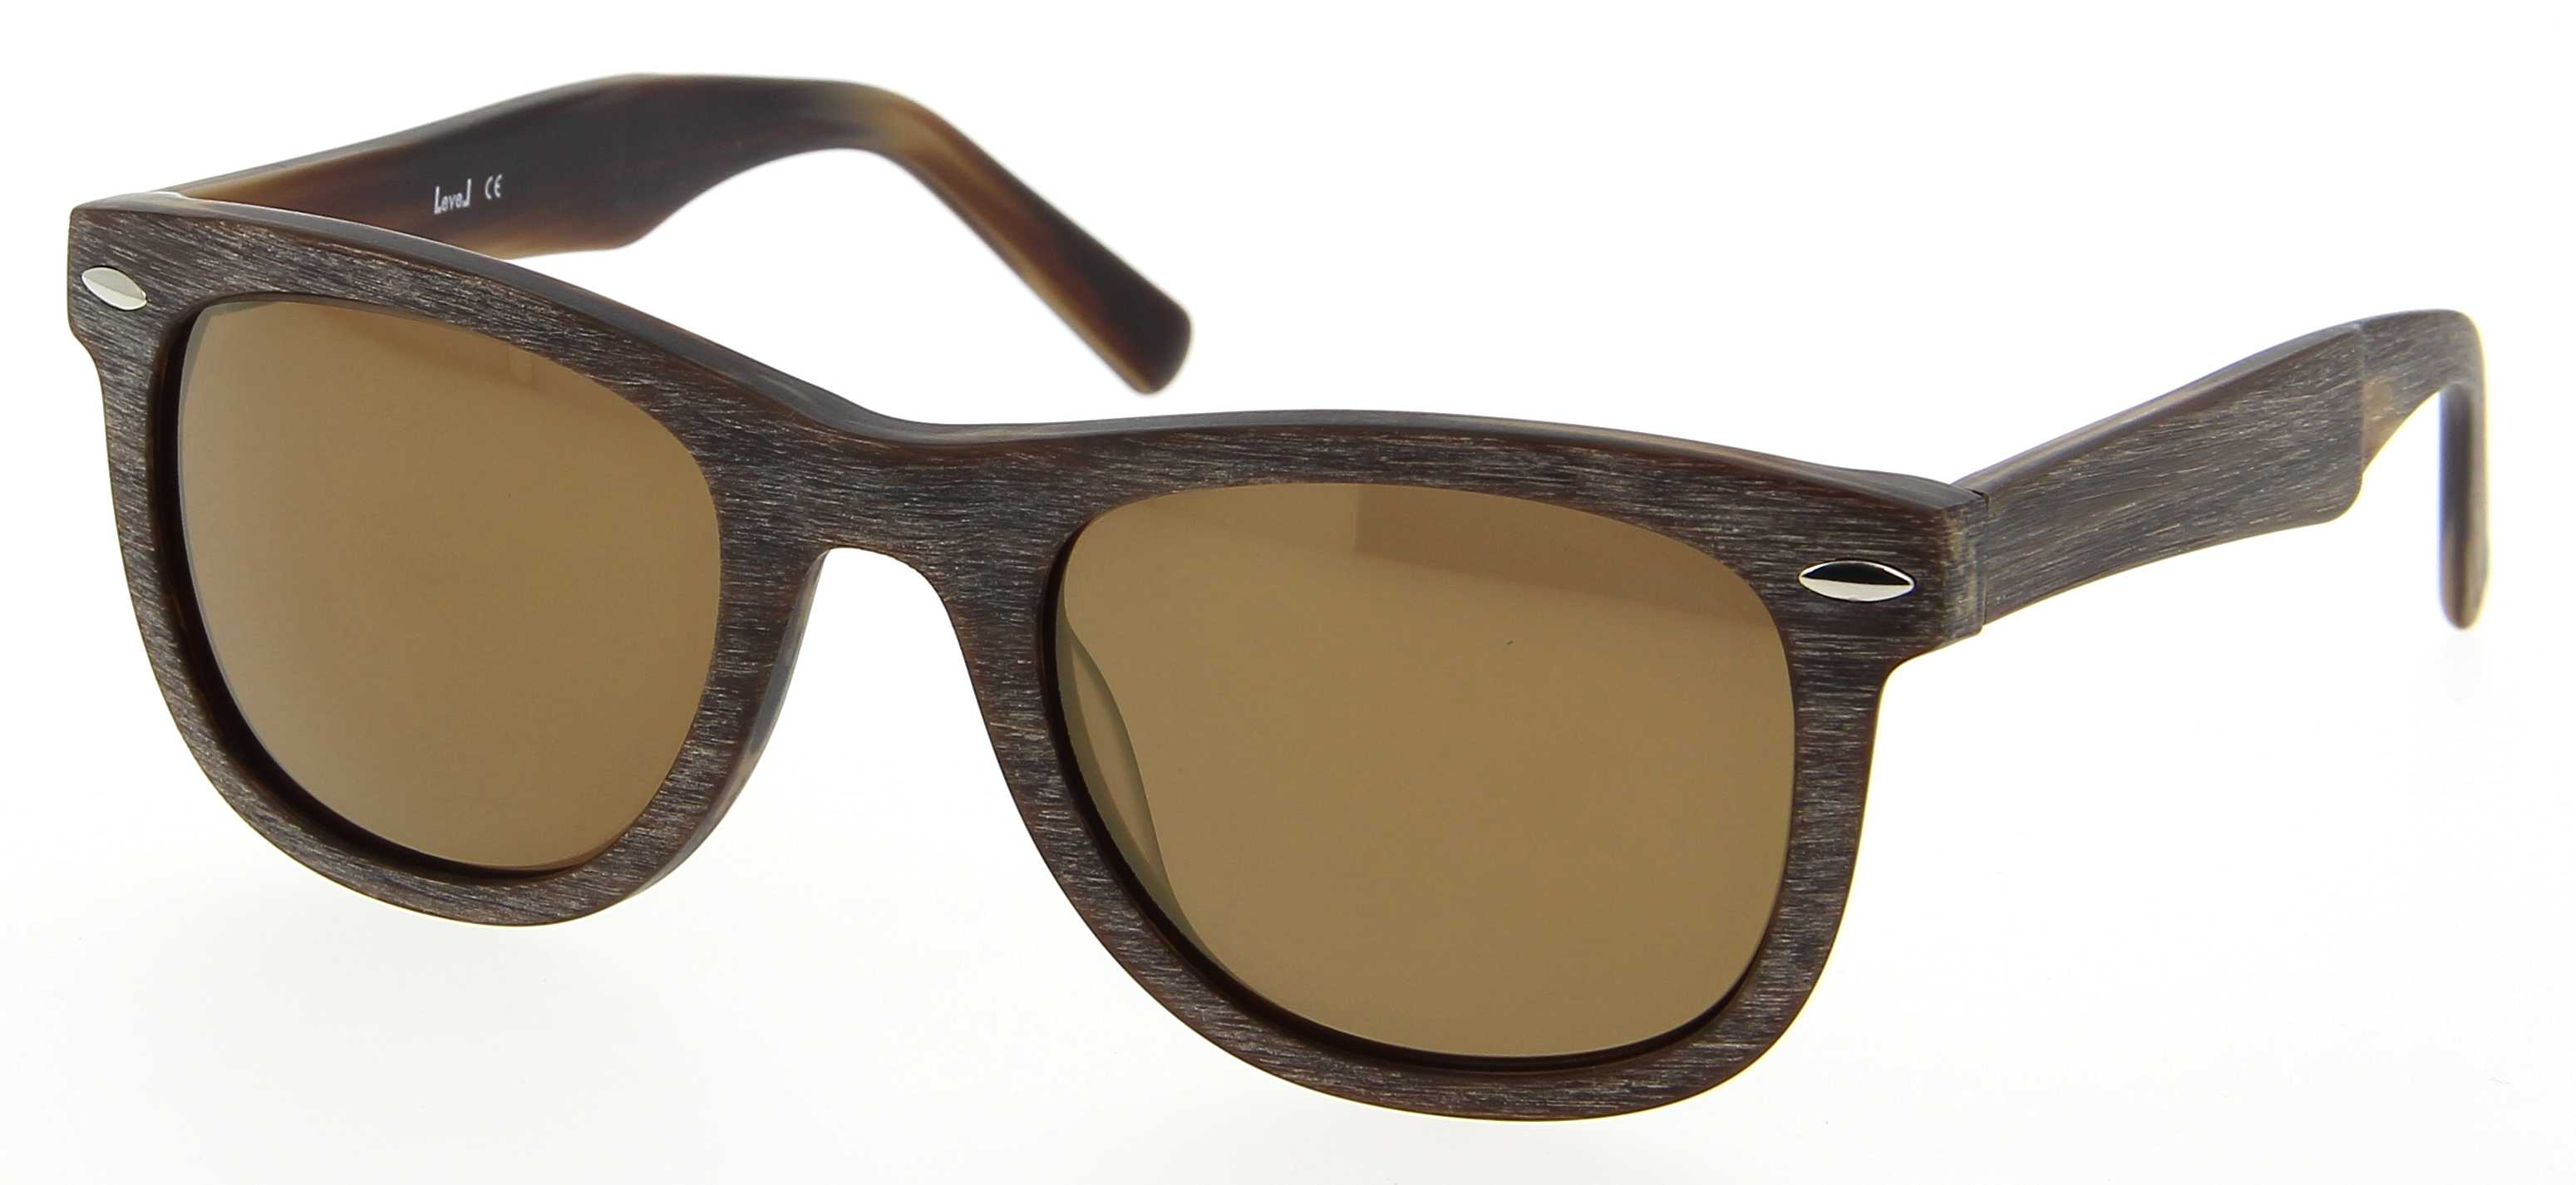 lunettes de soleil level le s1610 marr 51  22 mixte bois marron vintage cercl u00e9e vintage 51mmx22mm